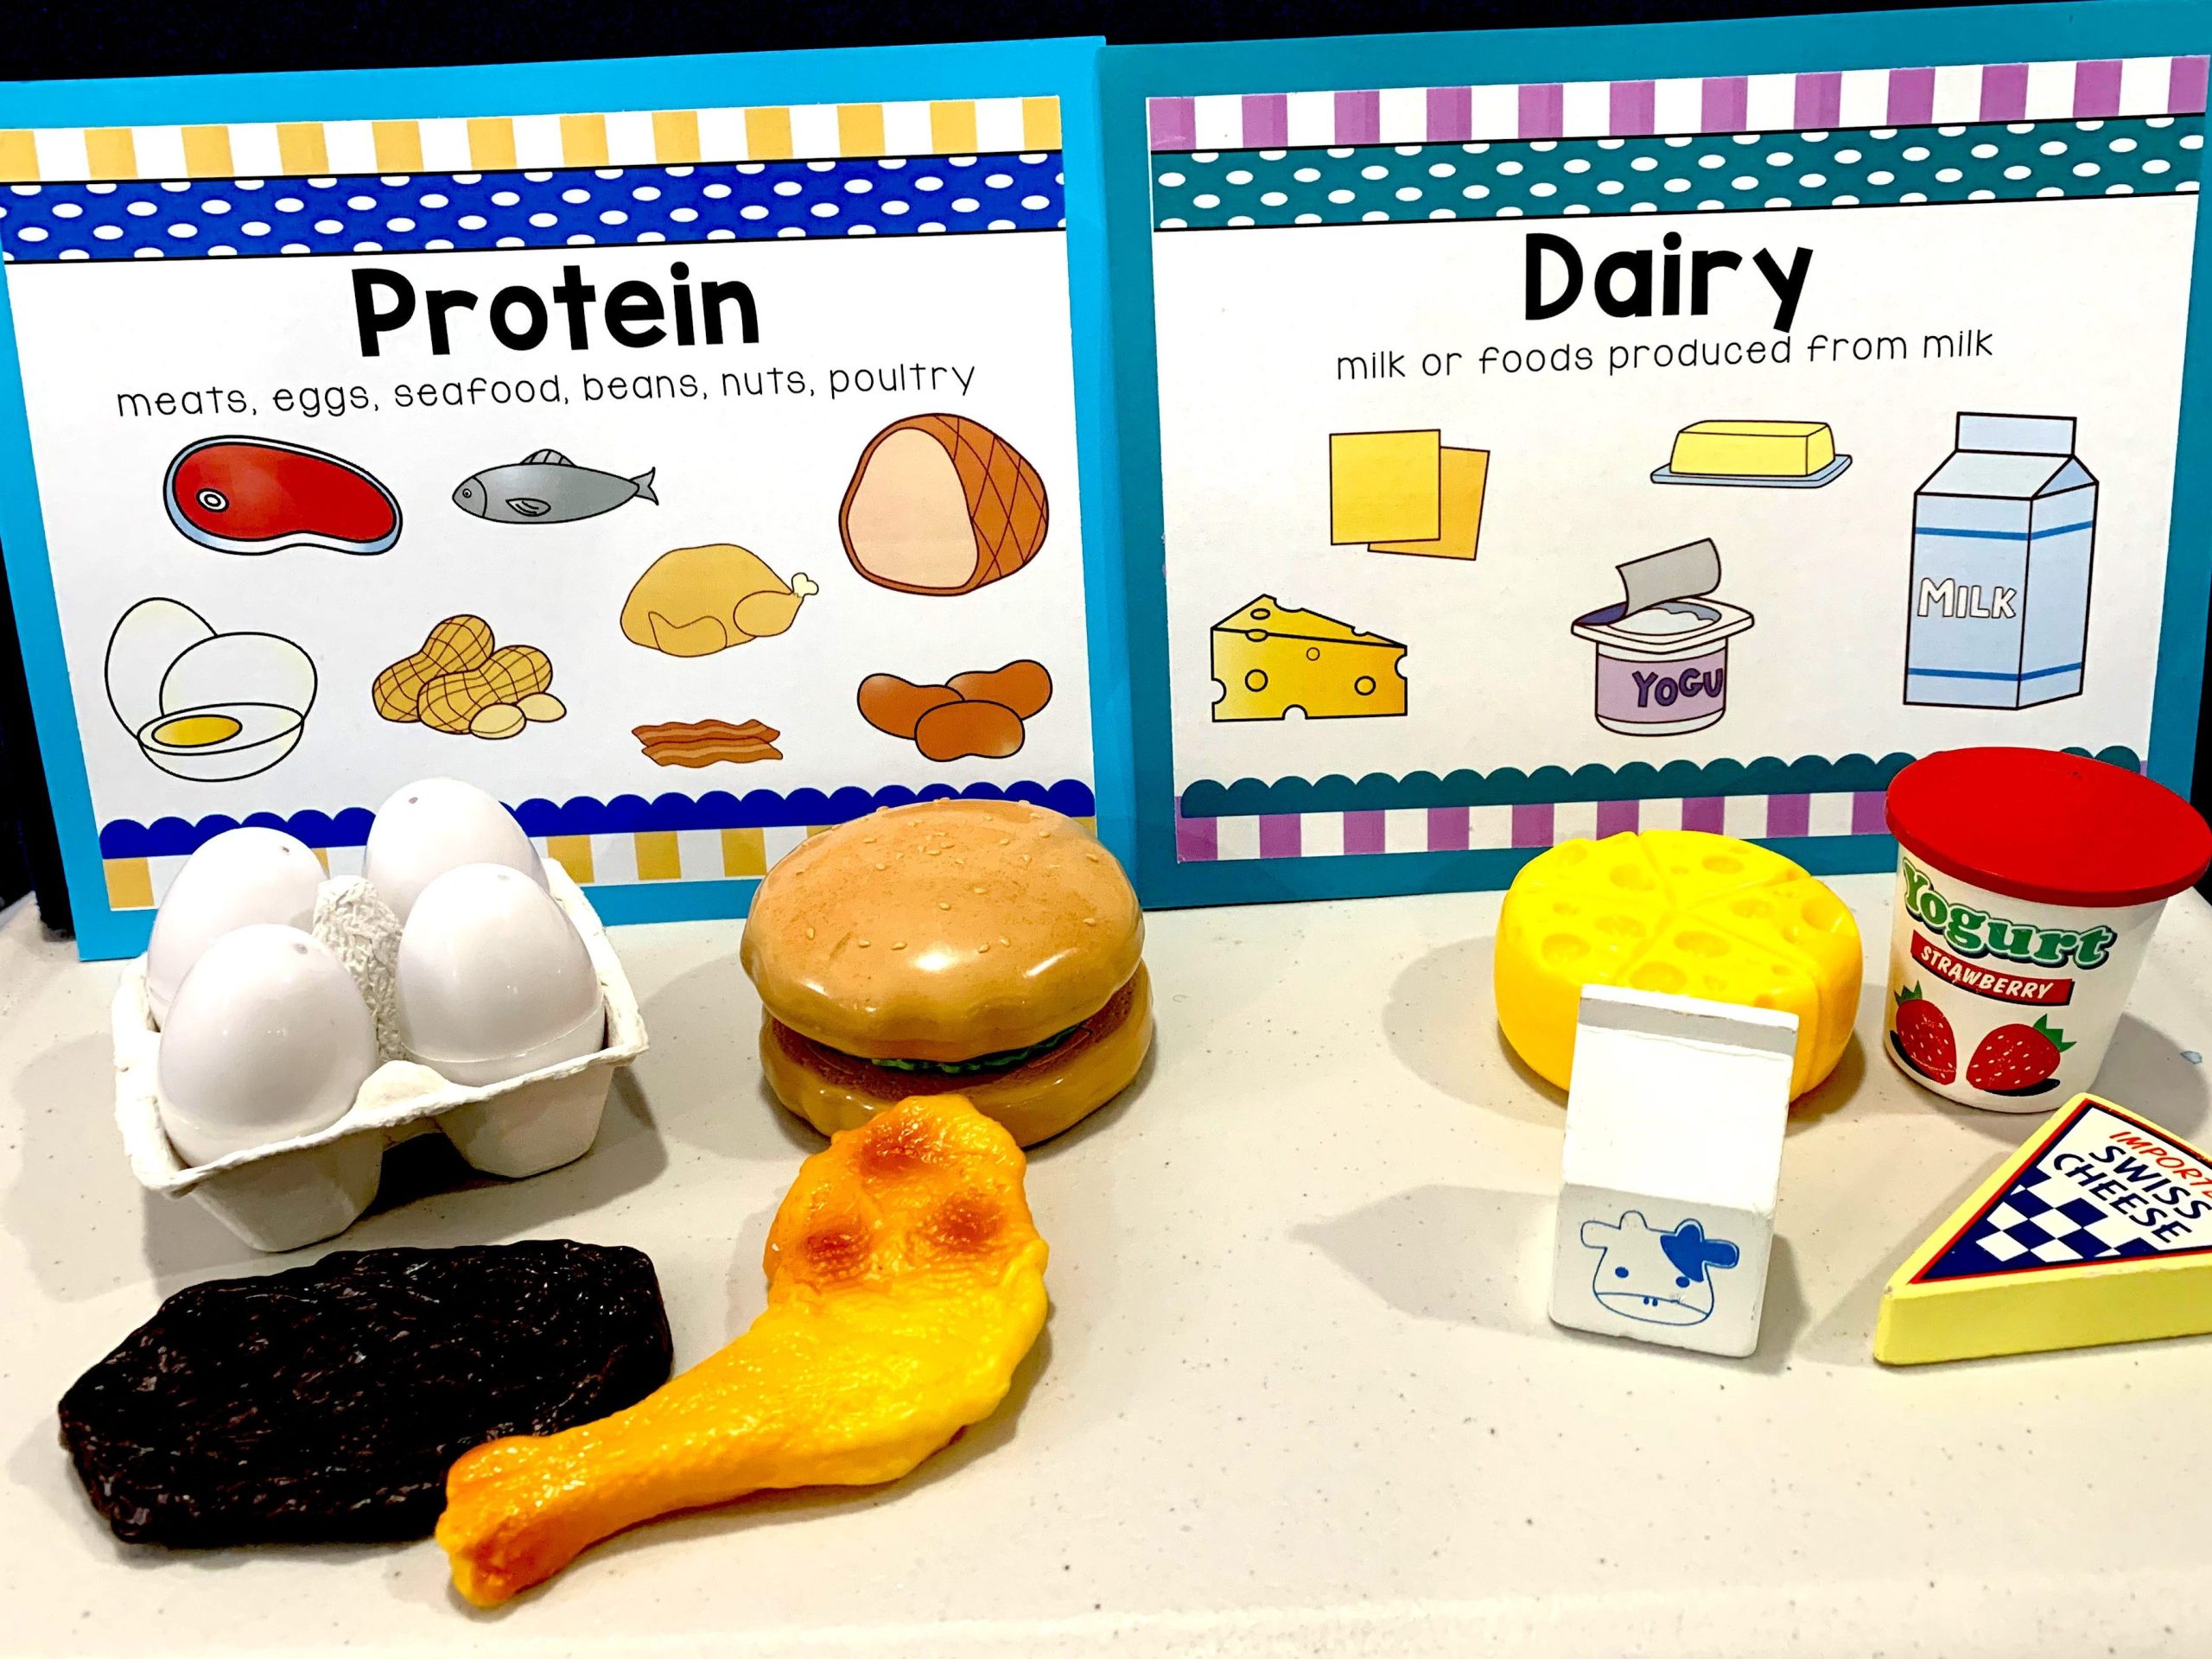 preschool nutrition activities